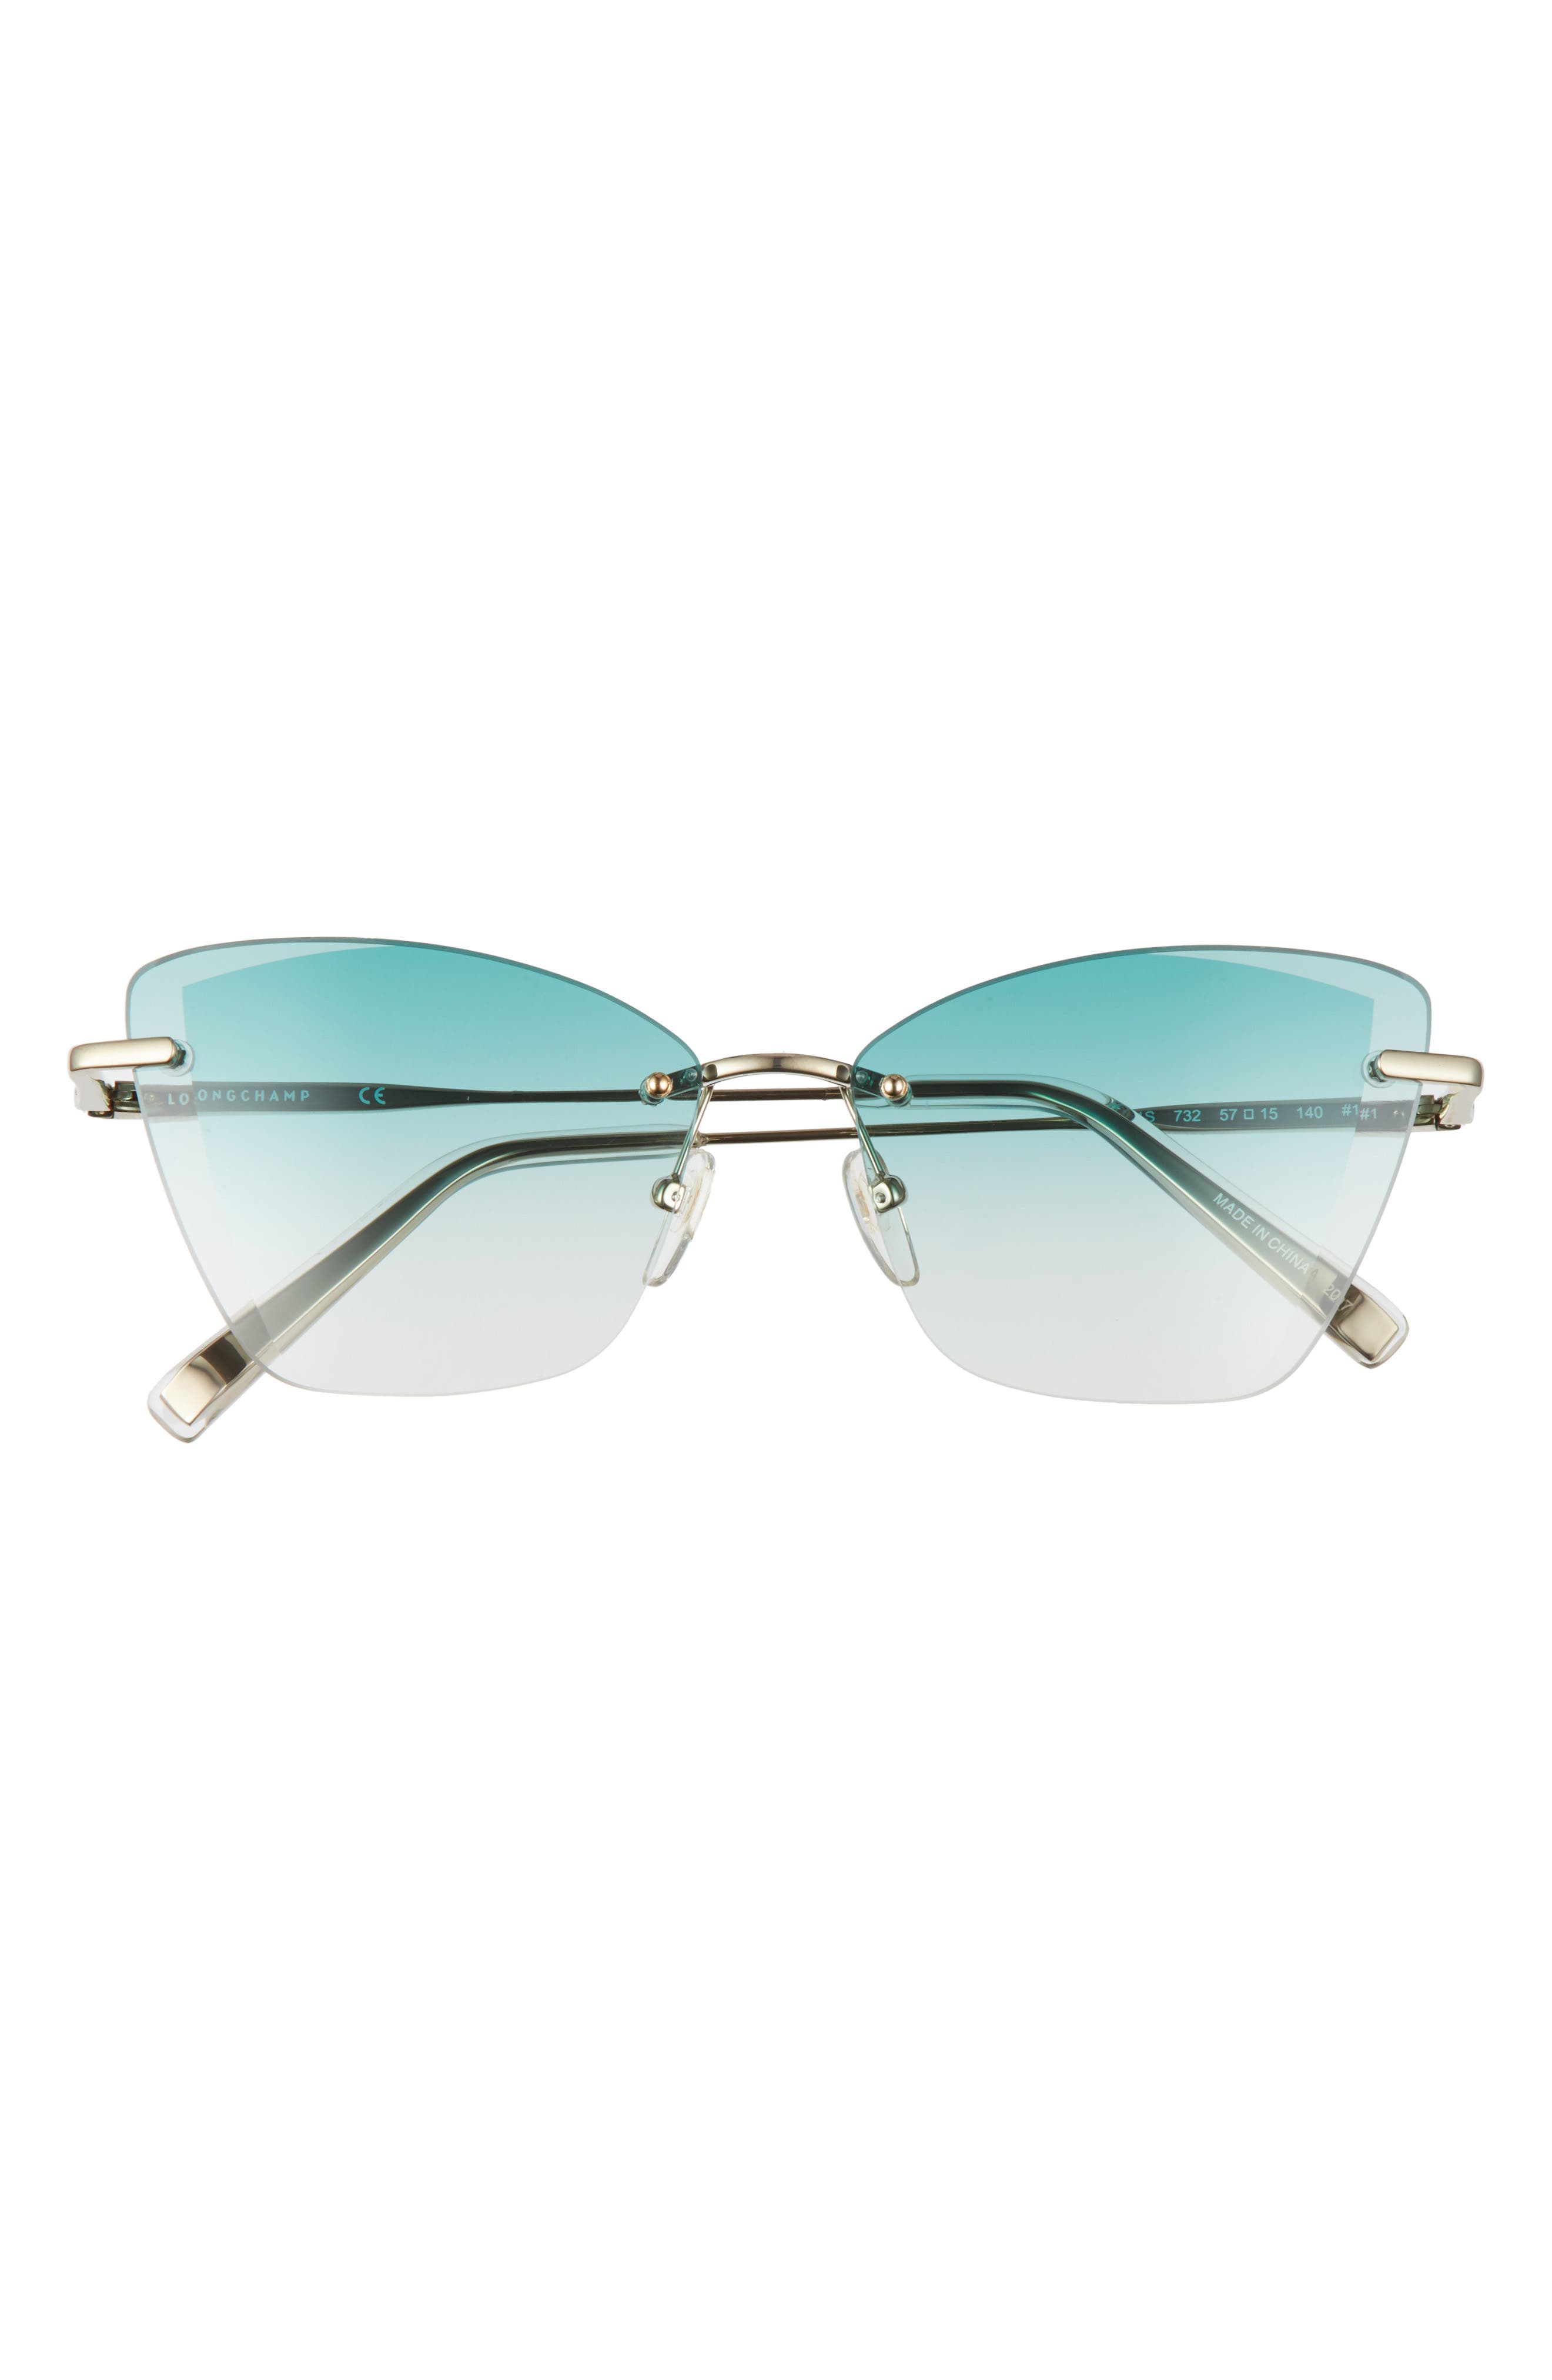 longchamp sunglasses 2019